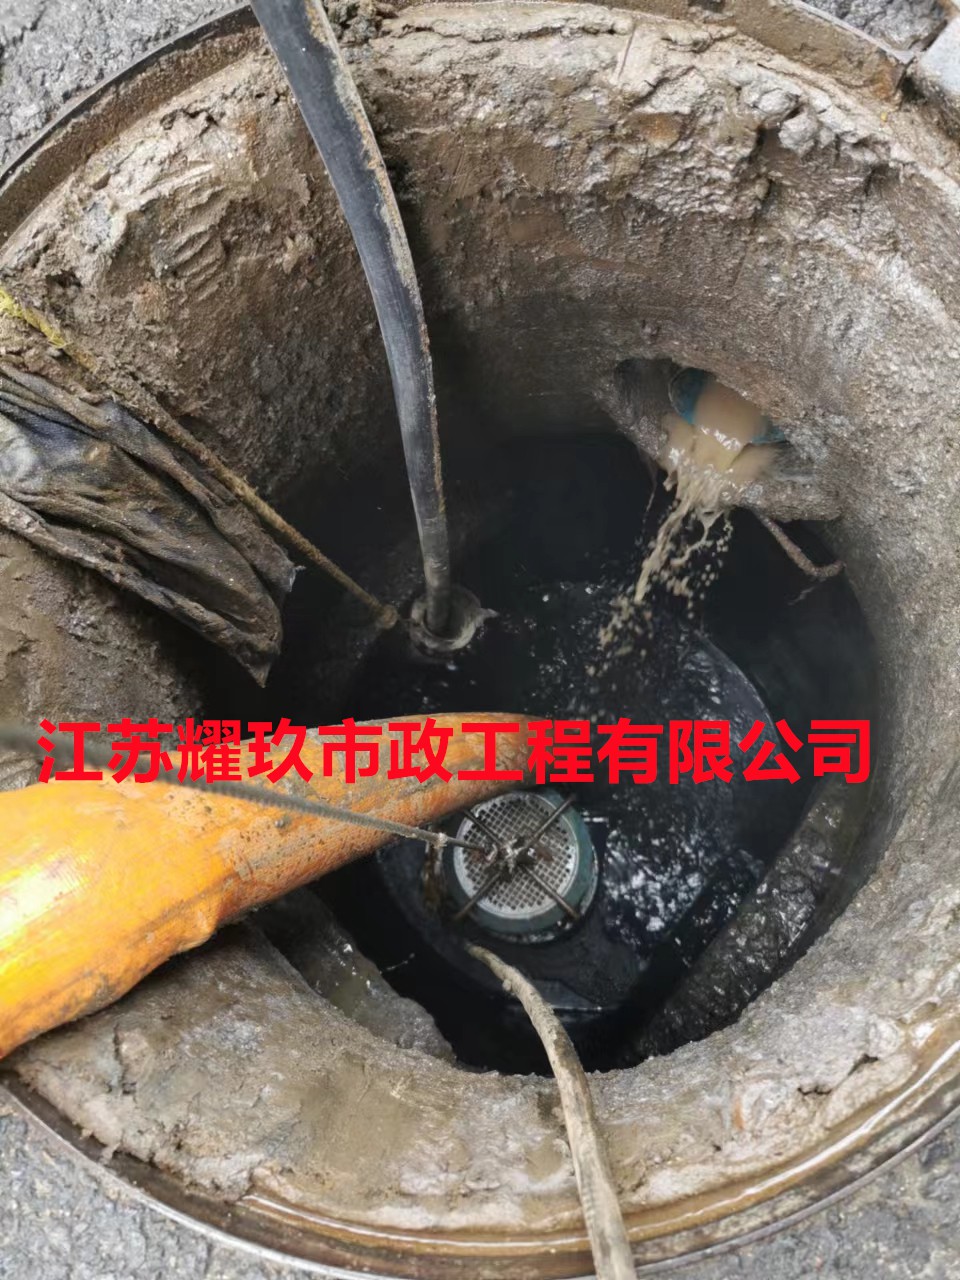 安徽省合肥市雨污管道改造公司